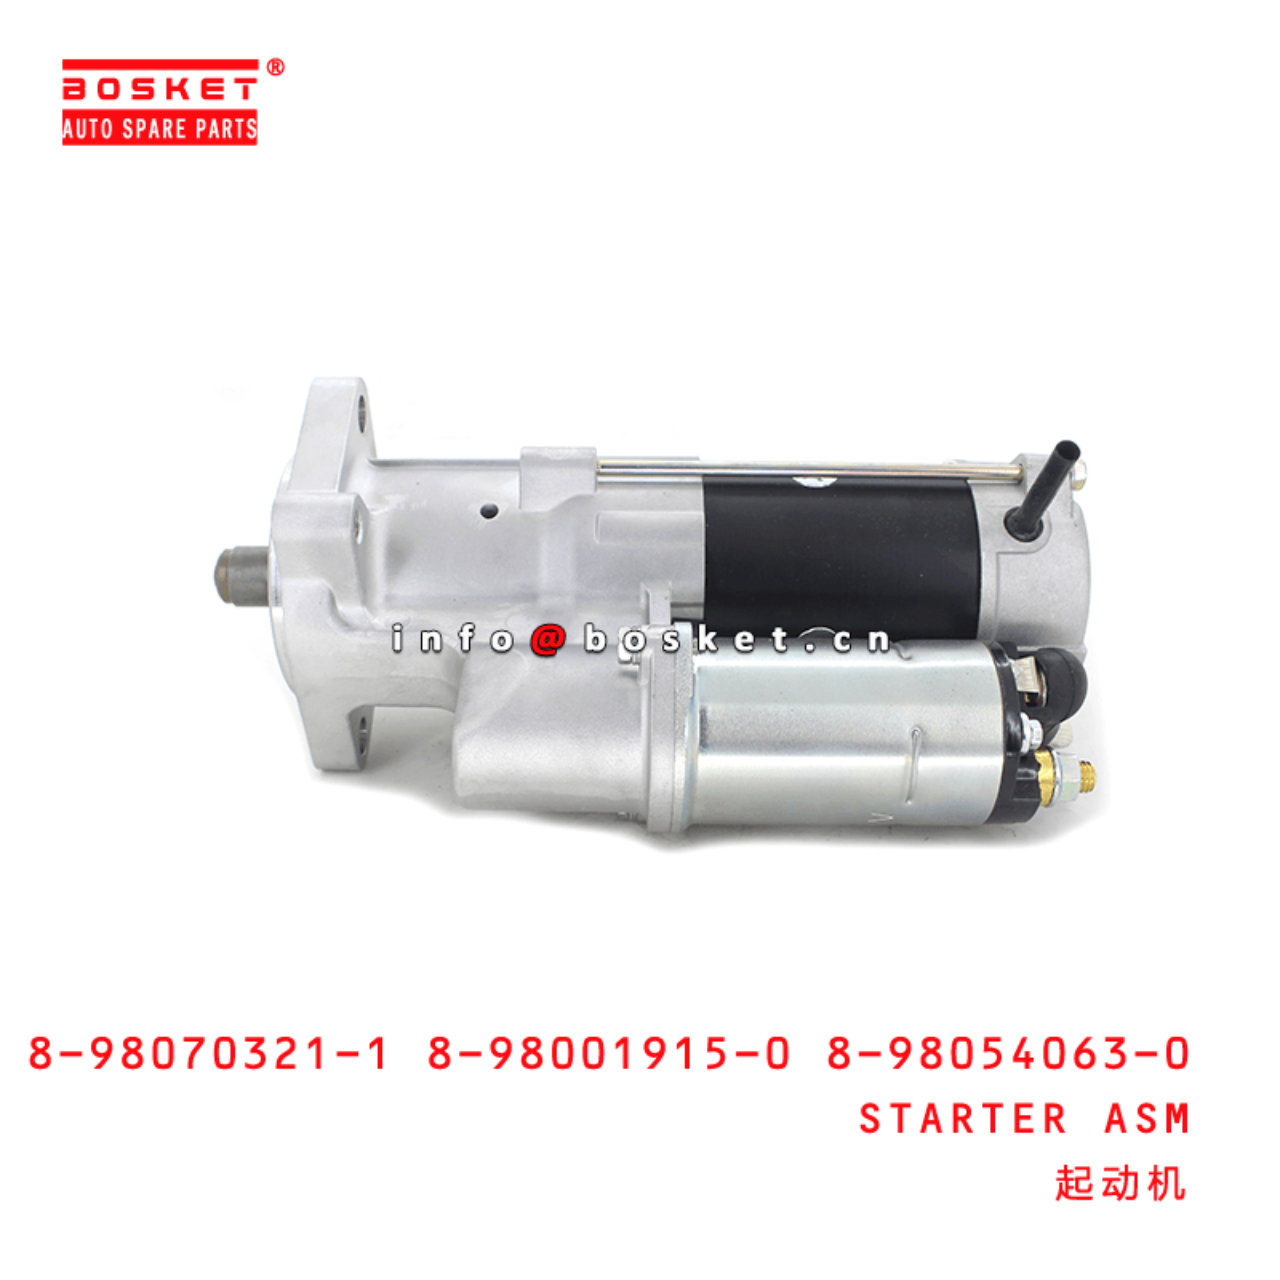 8-98070321-1 8-98001915-0 8-98054063-0 Starter Assembly Suitable for ISUZU TPG XD 4HK1T